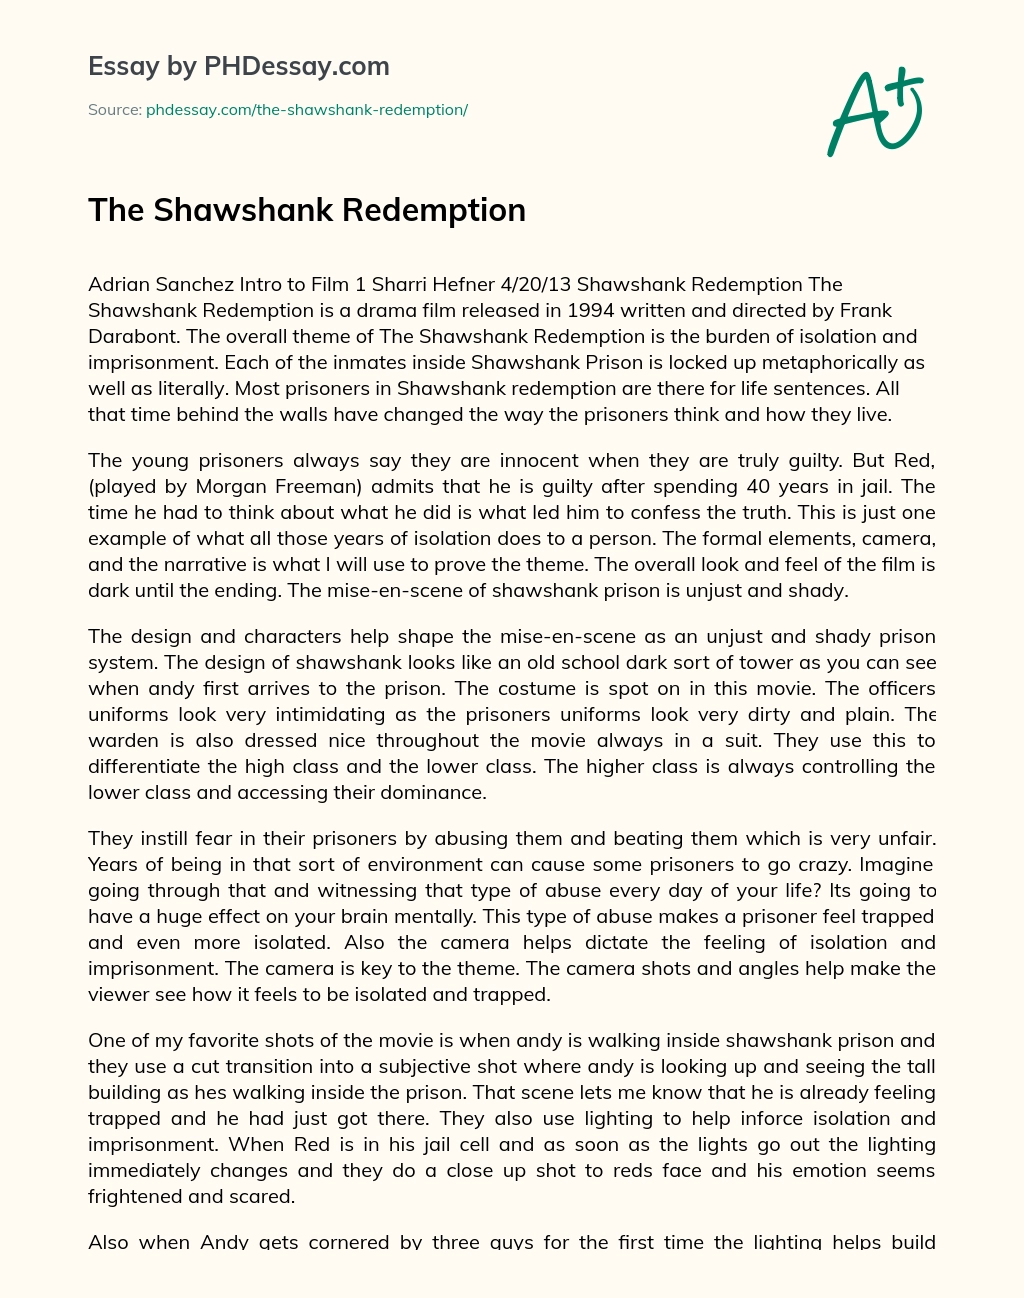 The Shawshank Redemption essay